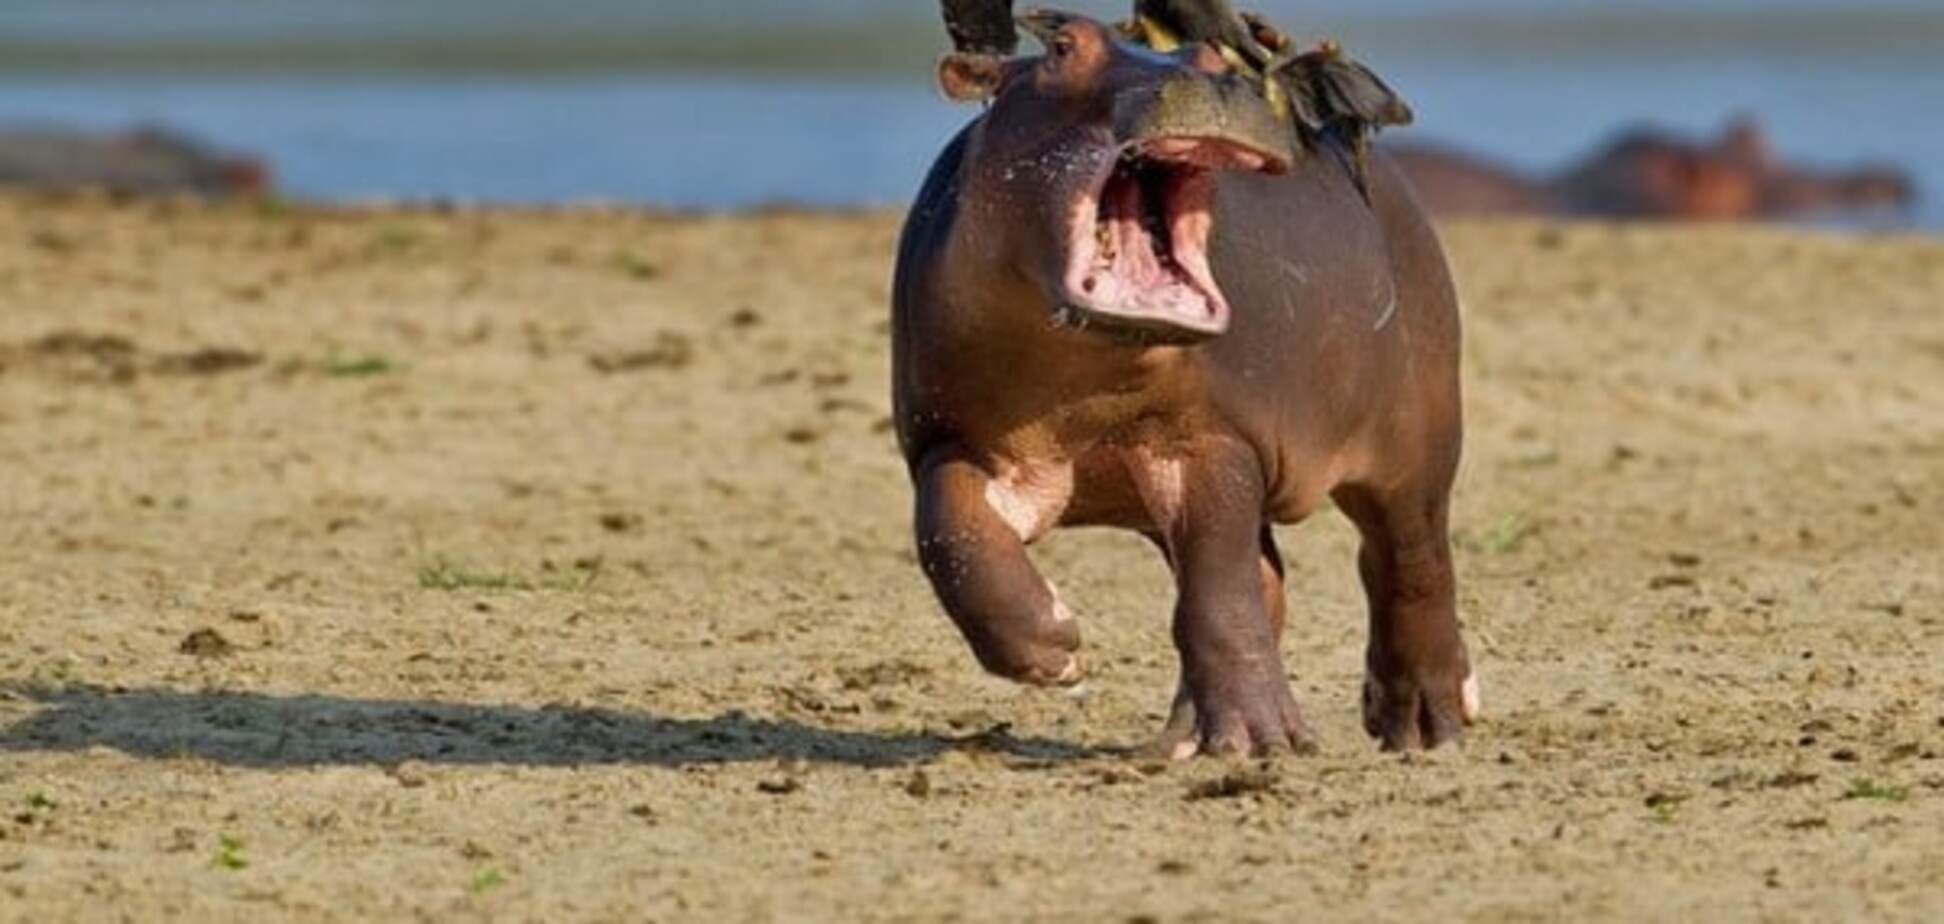 Лучшие фото дикой природы, которые рассмешили интернет в 2015 году